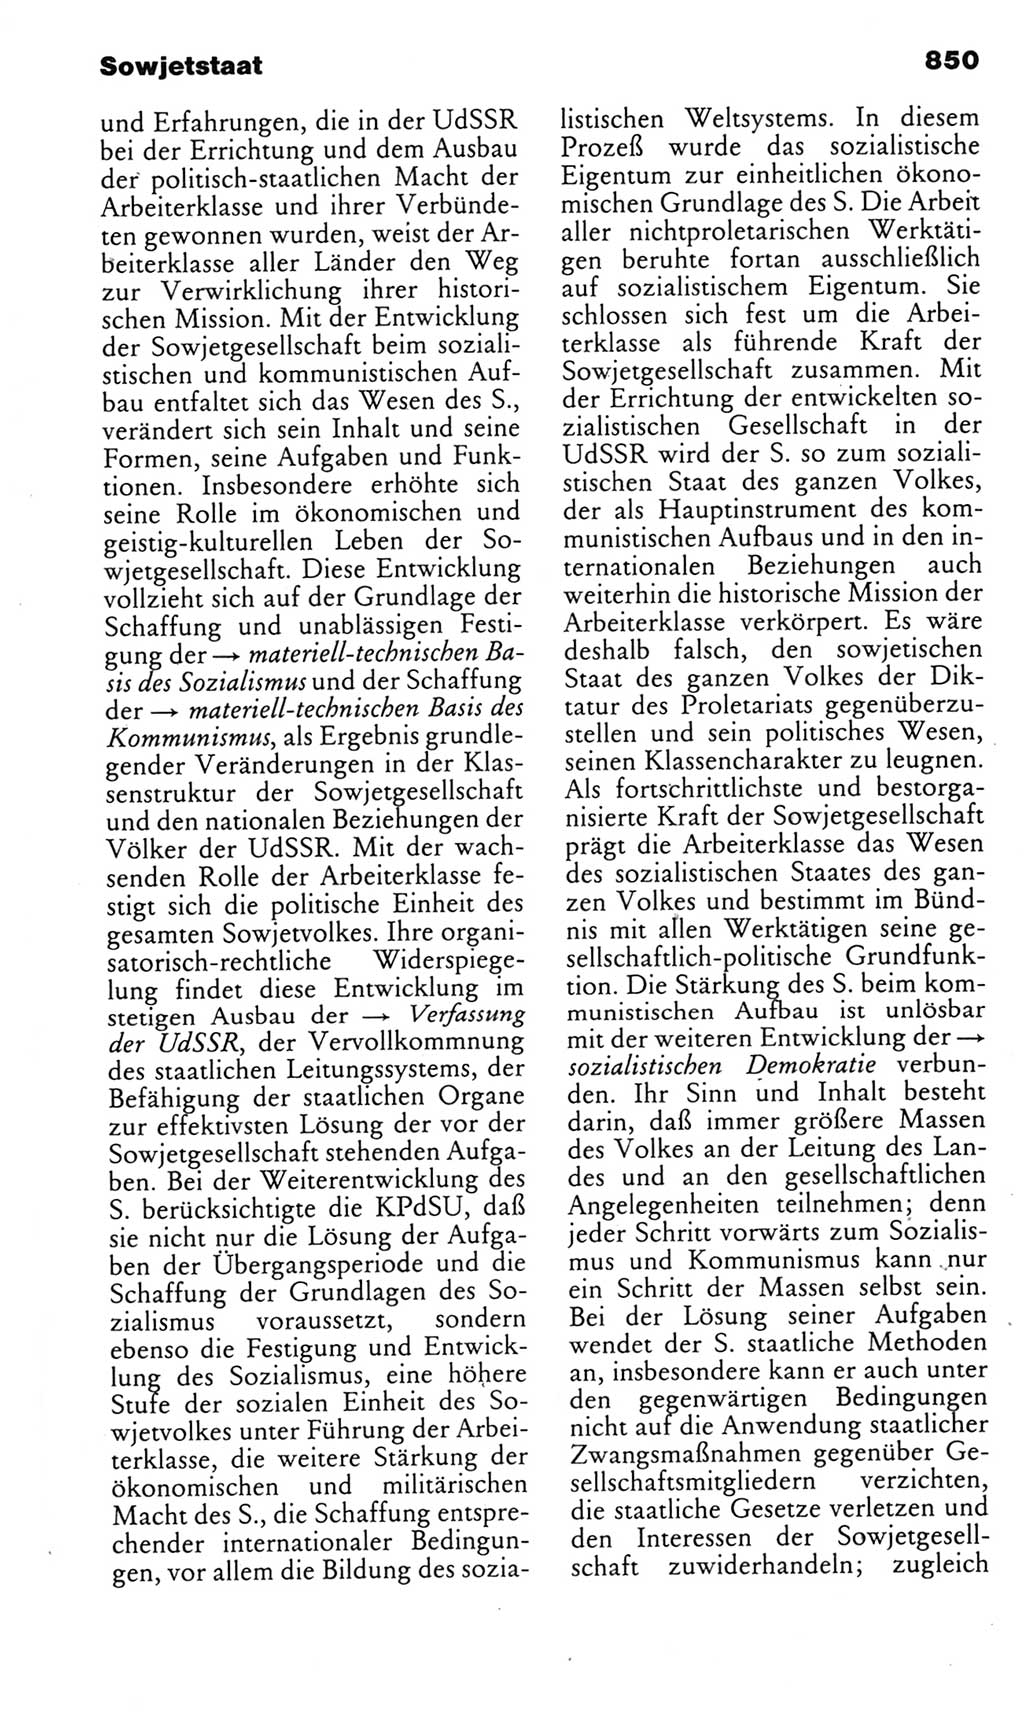 Kleines politisches Wörterbuch [Deutsche Demokratische Republik (DDR)] 1985, Seite 850 (Kl. pol. Wb. DDR 1985, S. 850)